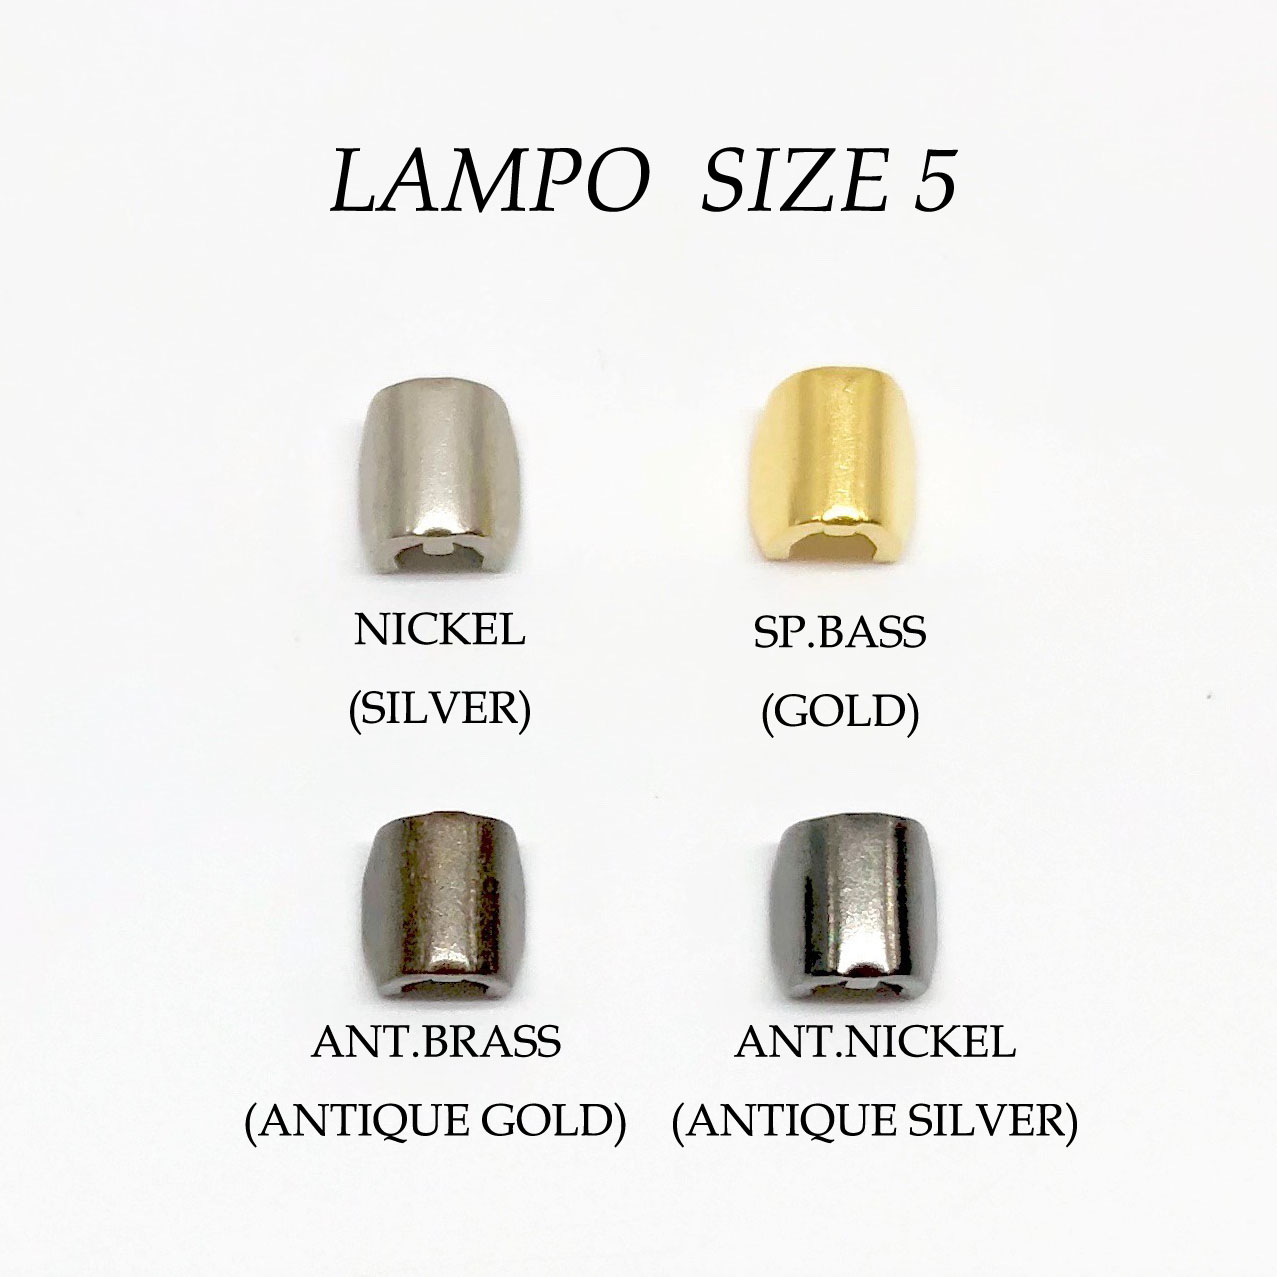 083S 僅適用於 Super LAMPO拉鍊上止尺寸5 LAMPO(GIOVANNI LANFRANCHI SPA)